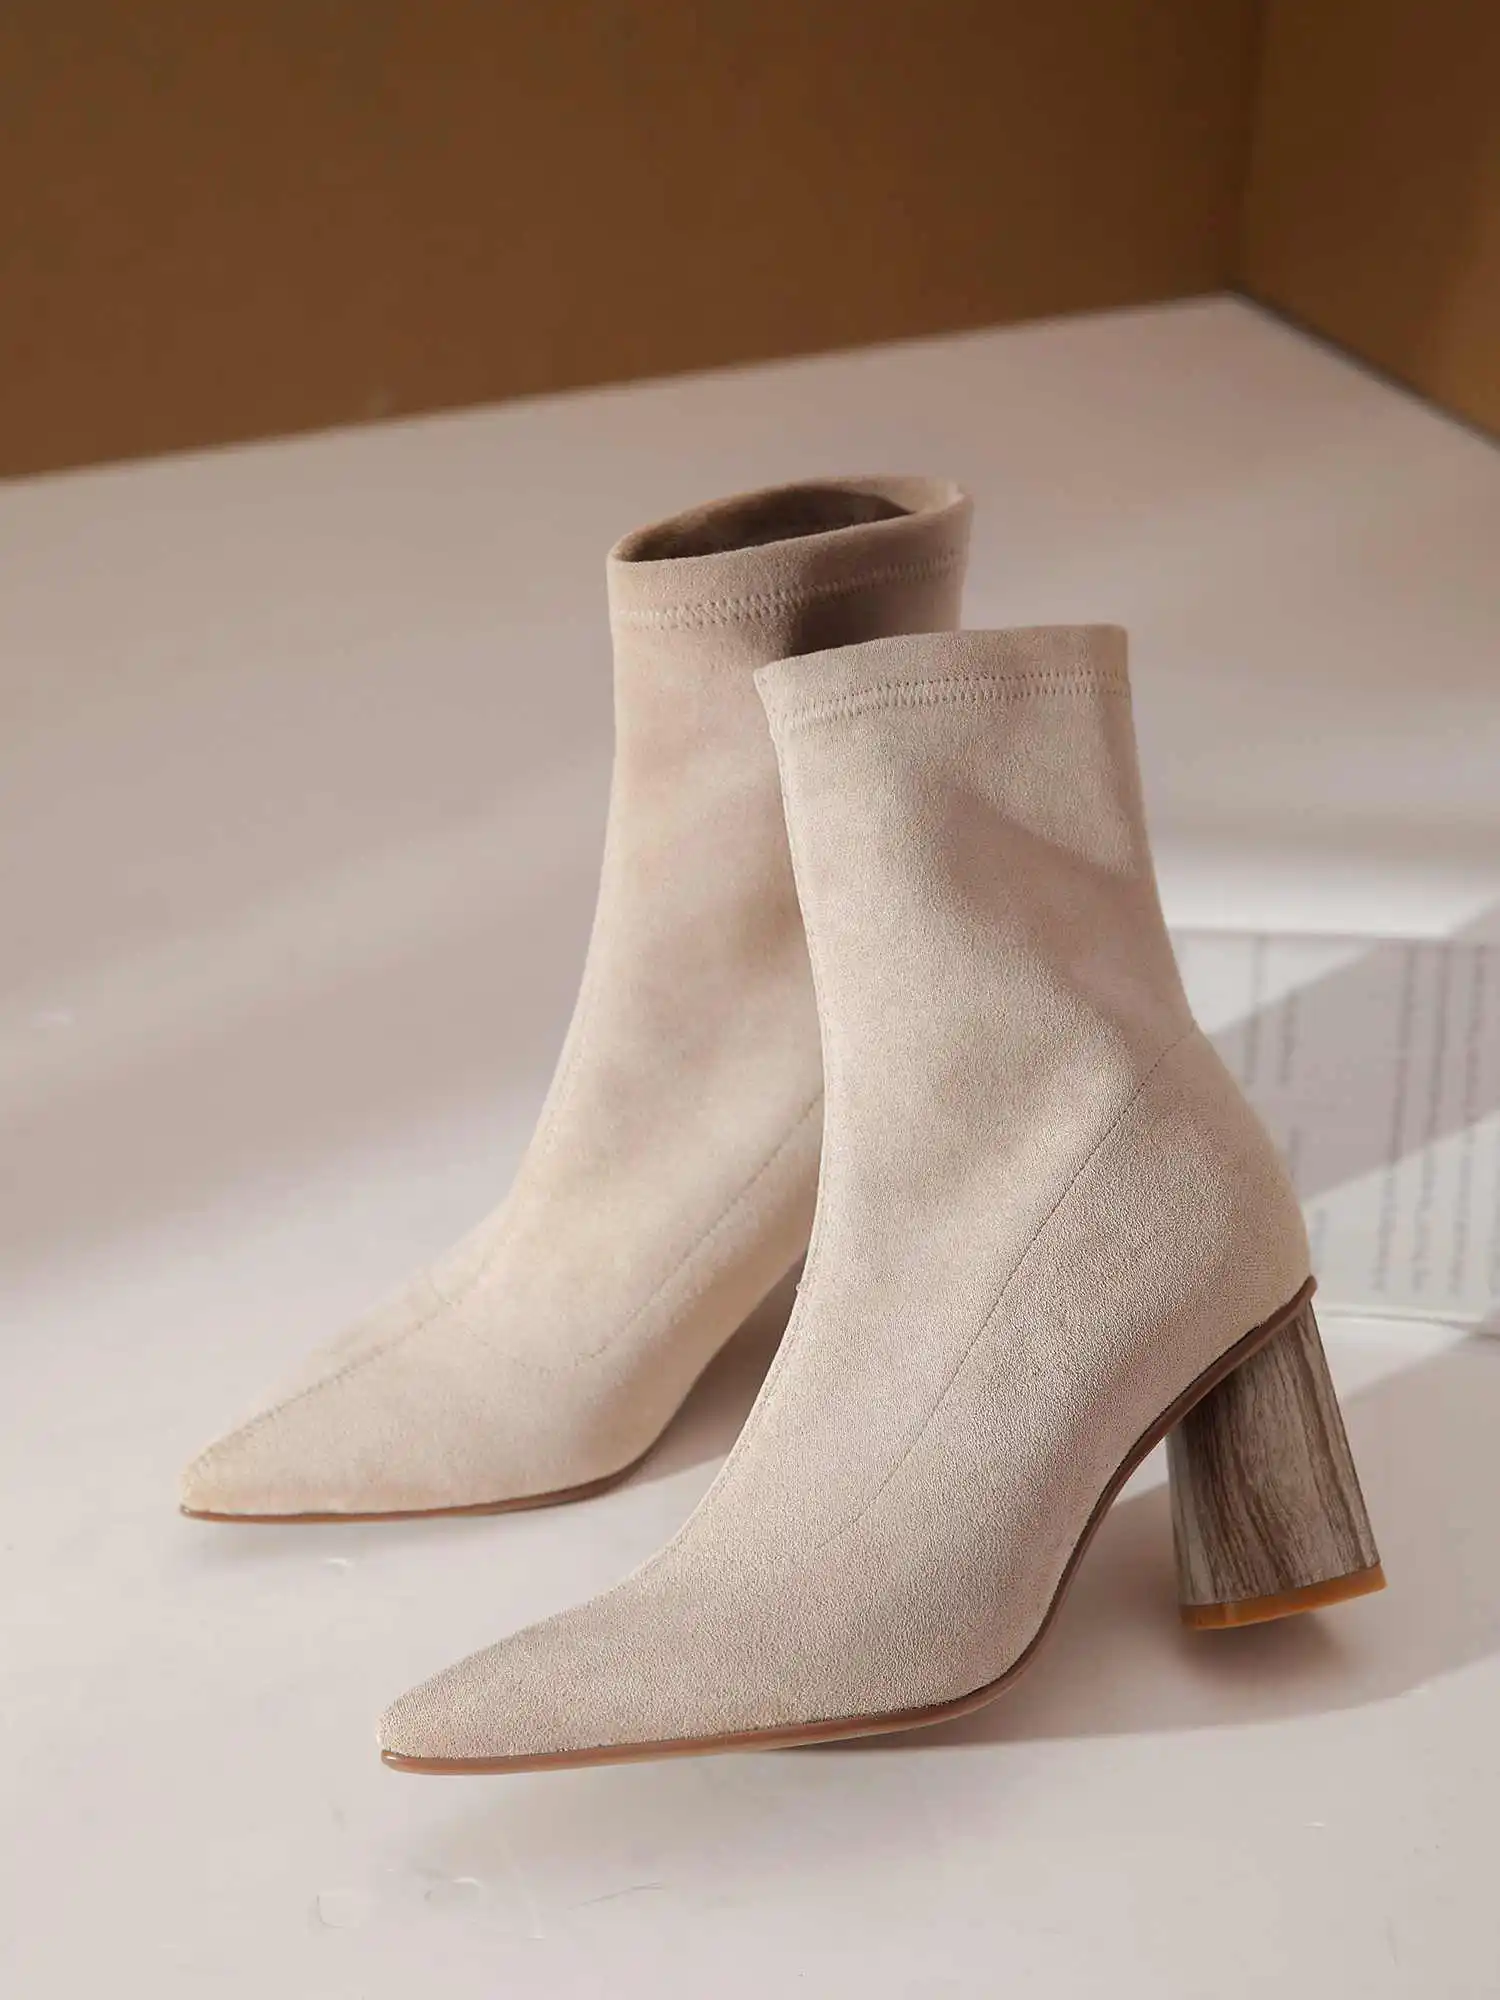 Krazing pot/Лидер продаж; однотонная обувь в простом стиле; Офисная Женская обувь из мягкого флока; эластичная обувь с острым носком на высоком каблуке; повседневная одежда; классические женские ботильоны; L78